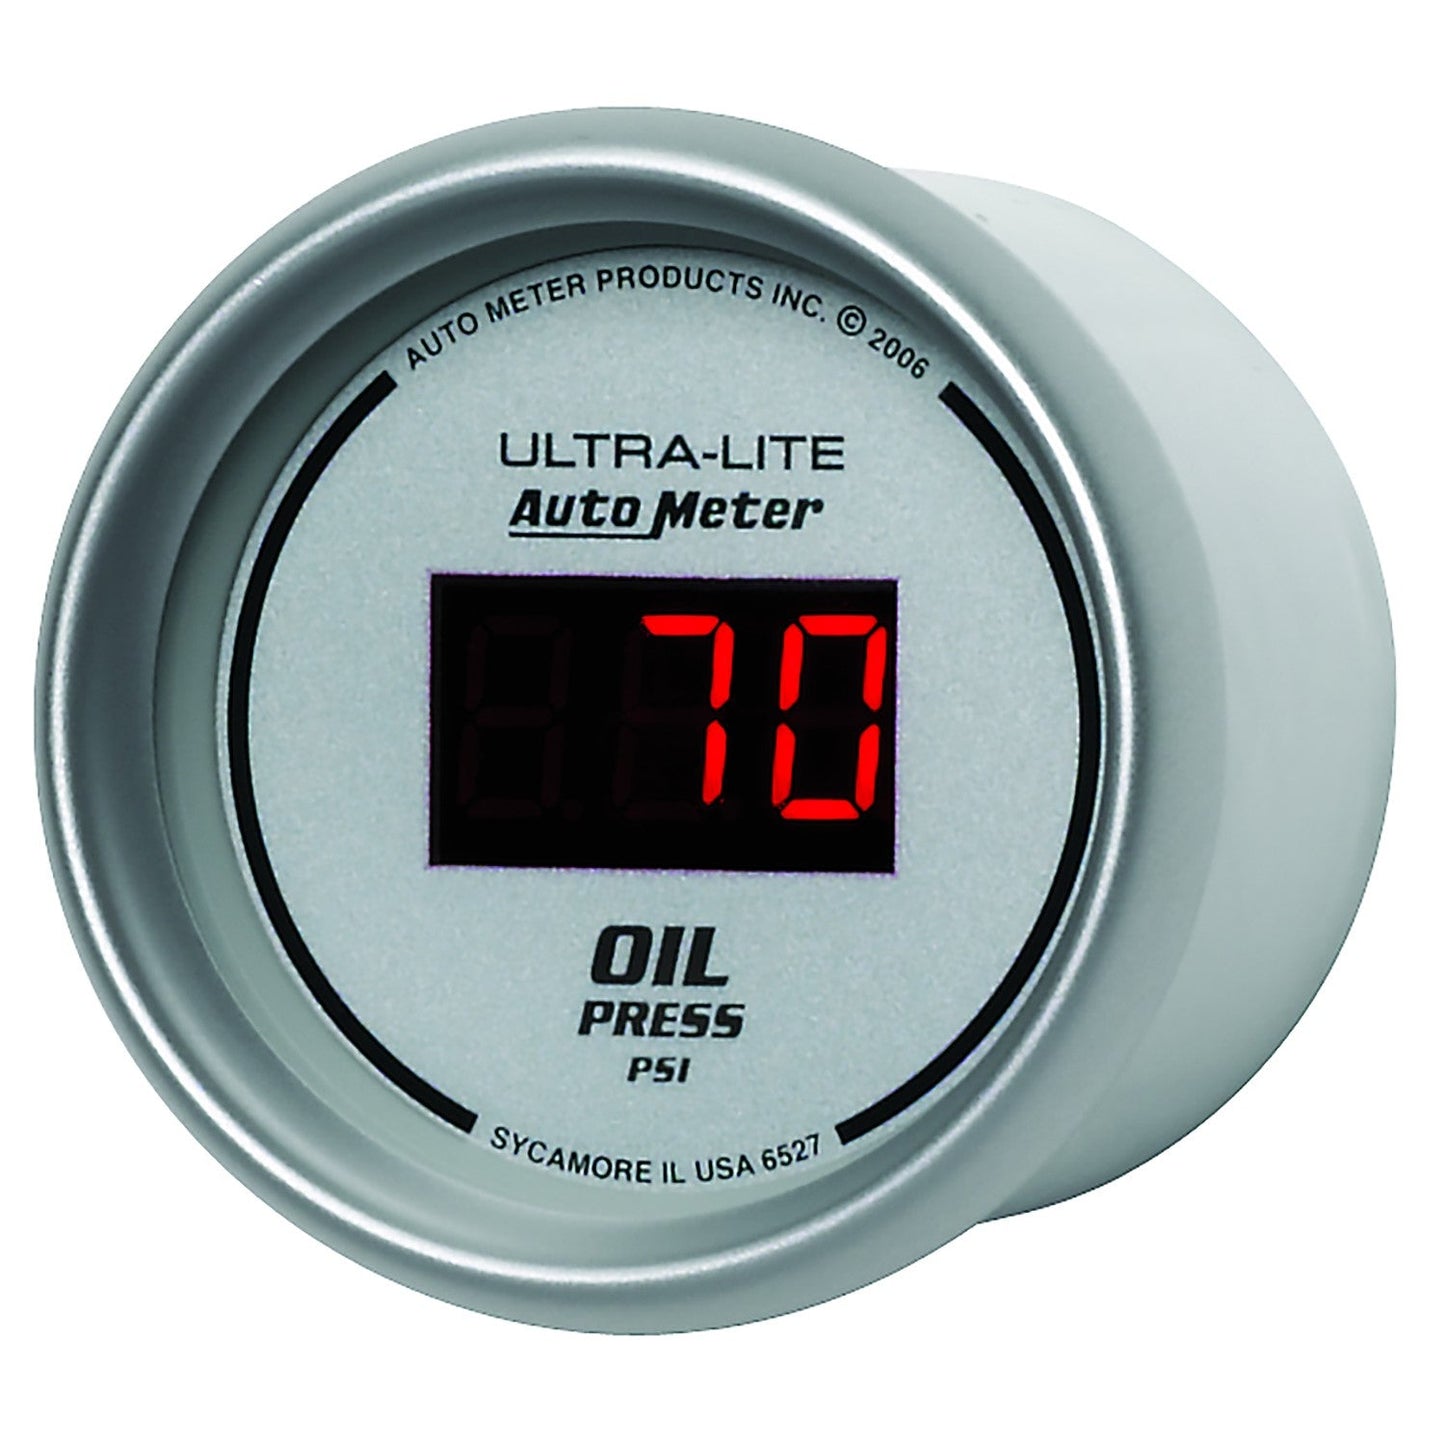 AutoMeter - 2-1/16" OIL PRESSURE, 5-100 PSI, ULTRA-LITE DIGITAL (6527)